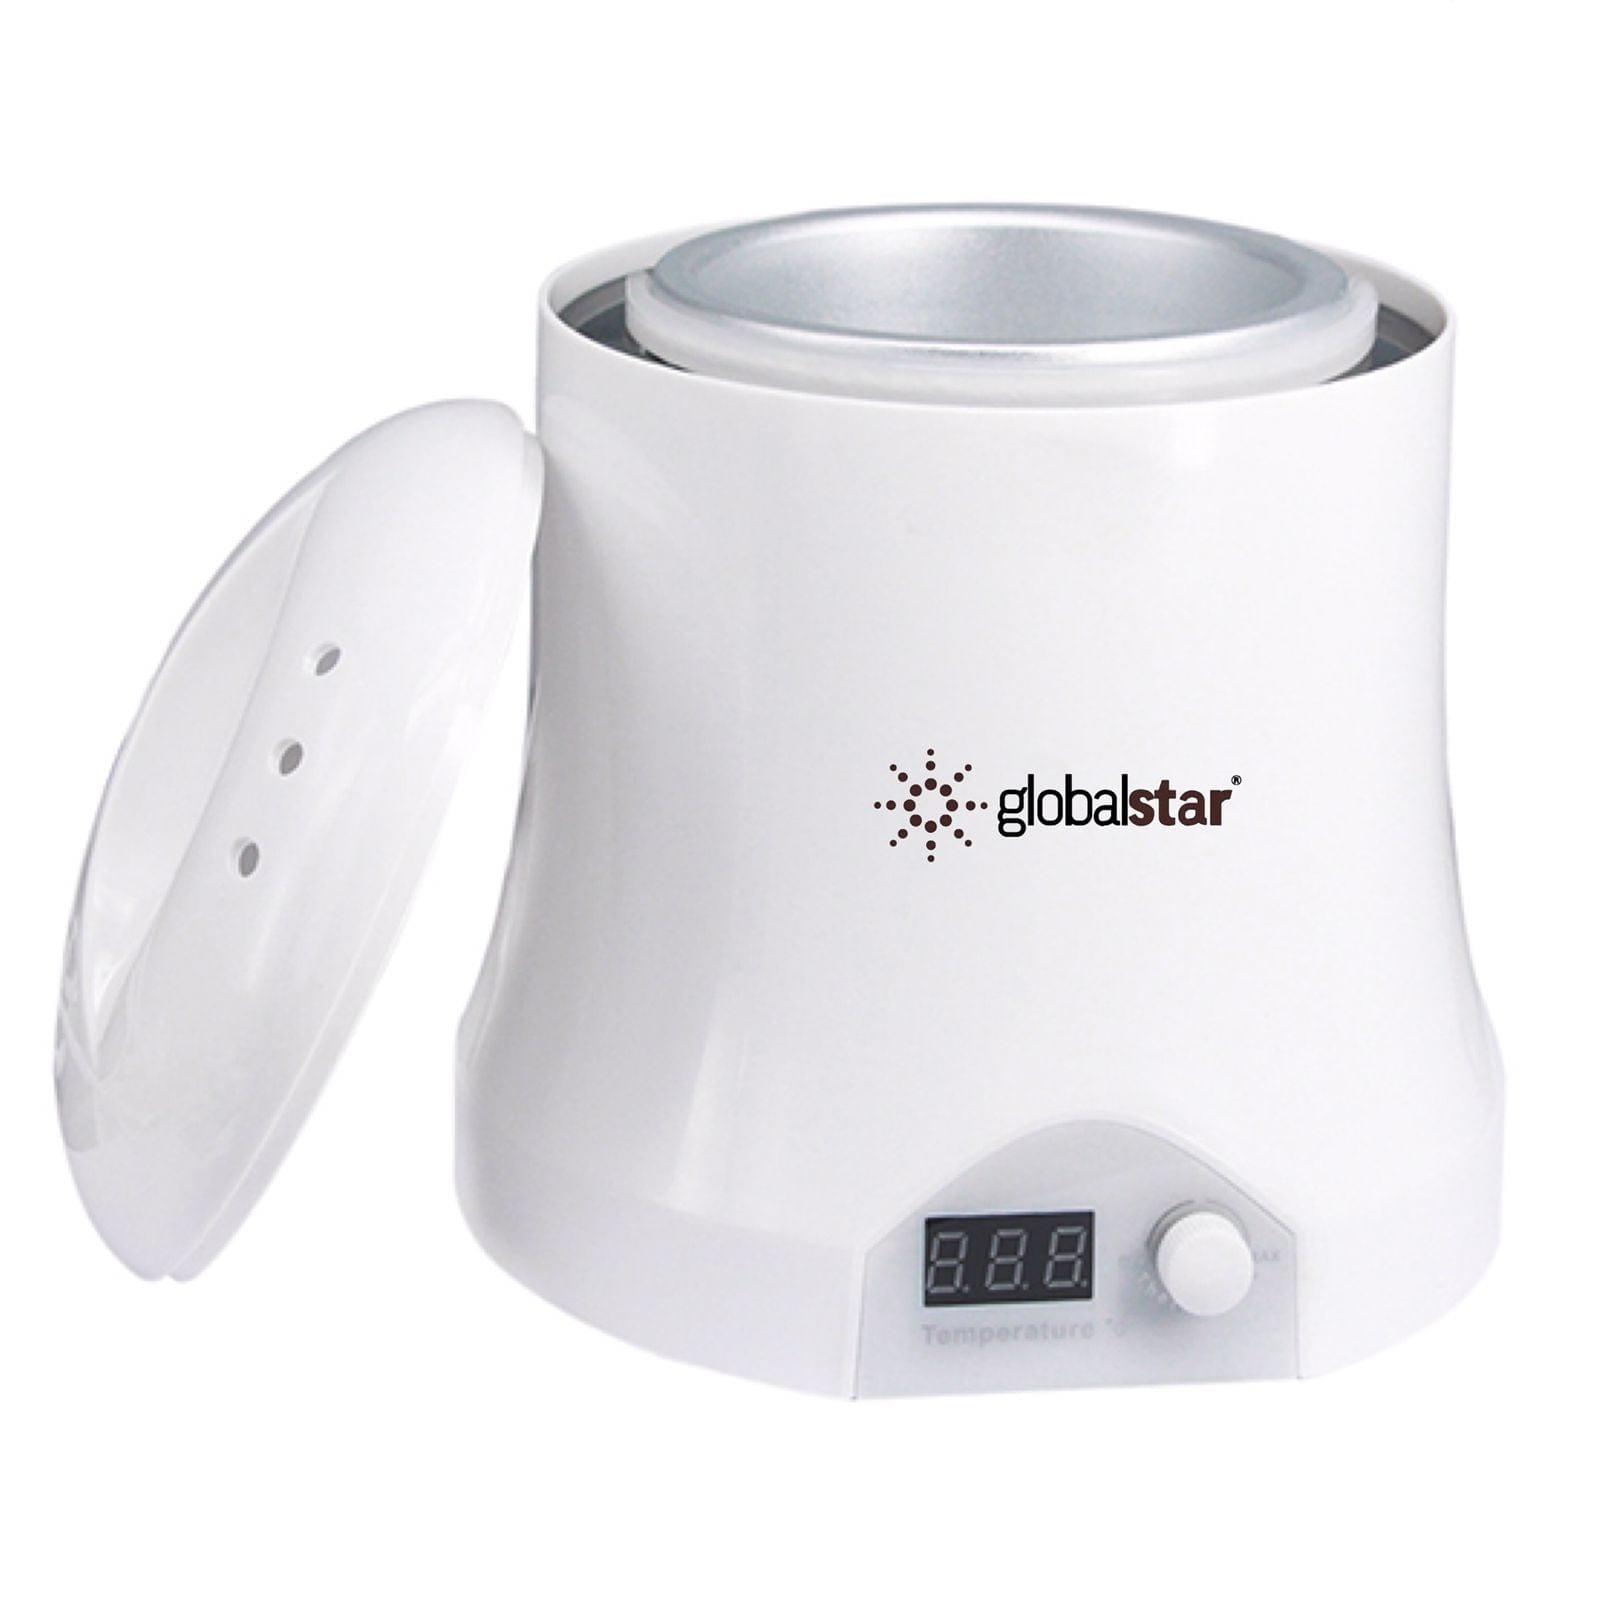 Globalstar Wax Heater Machine 1000ml WW-408